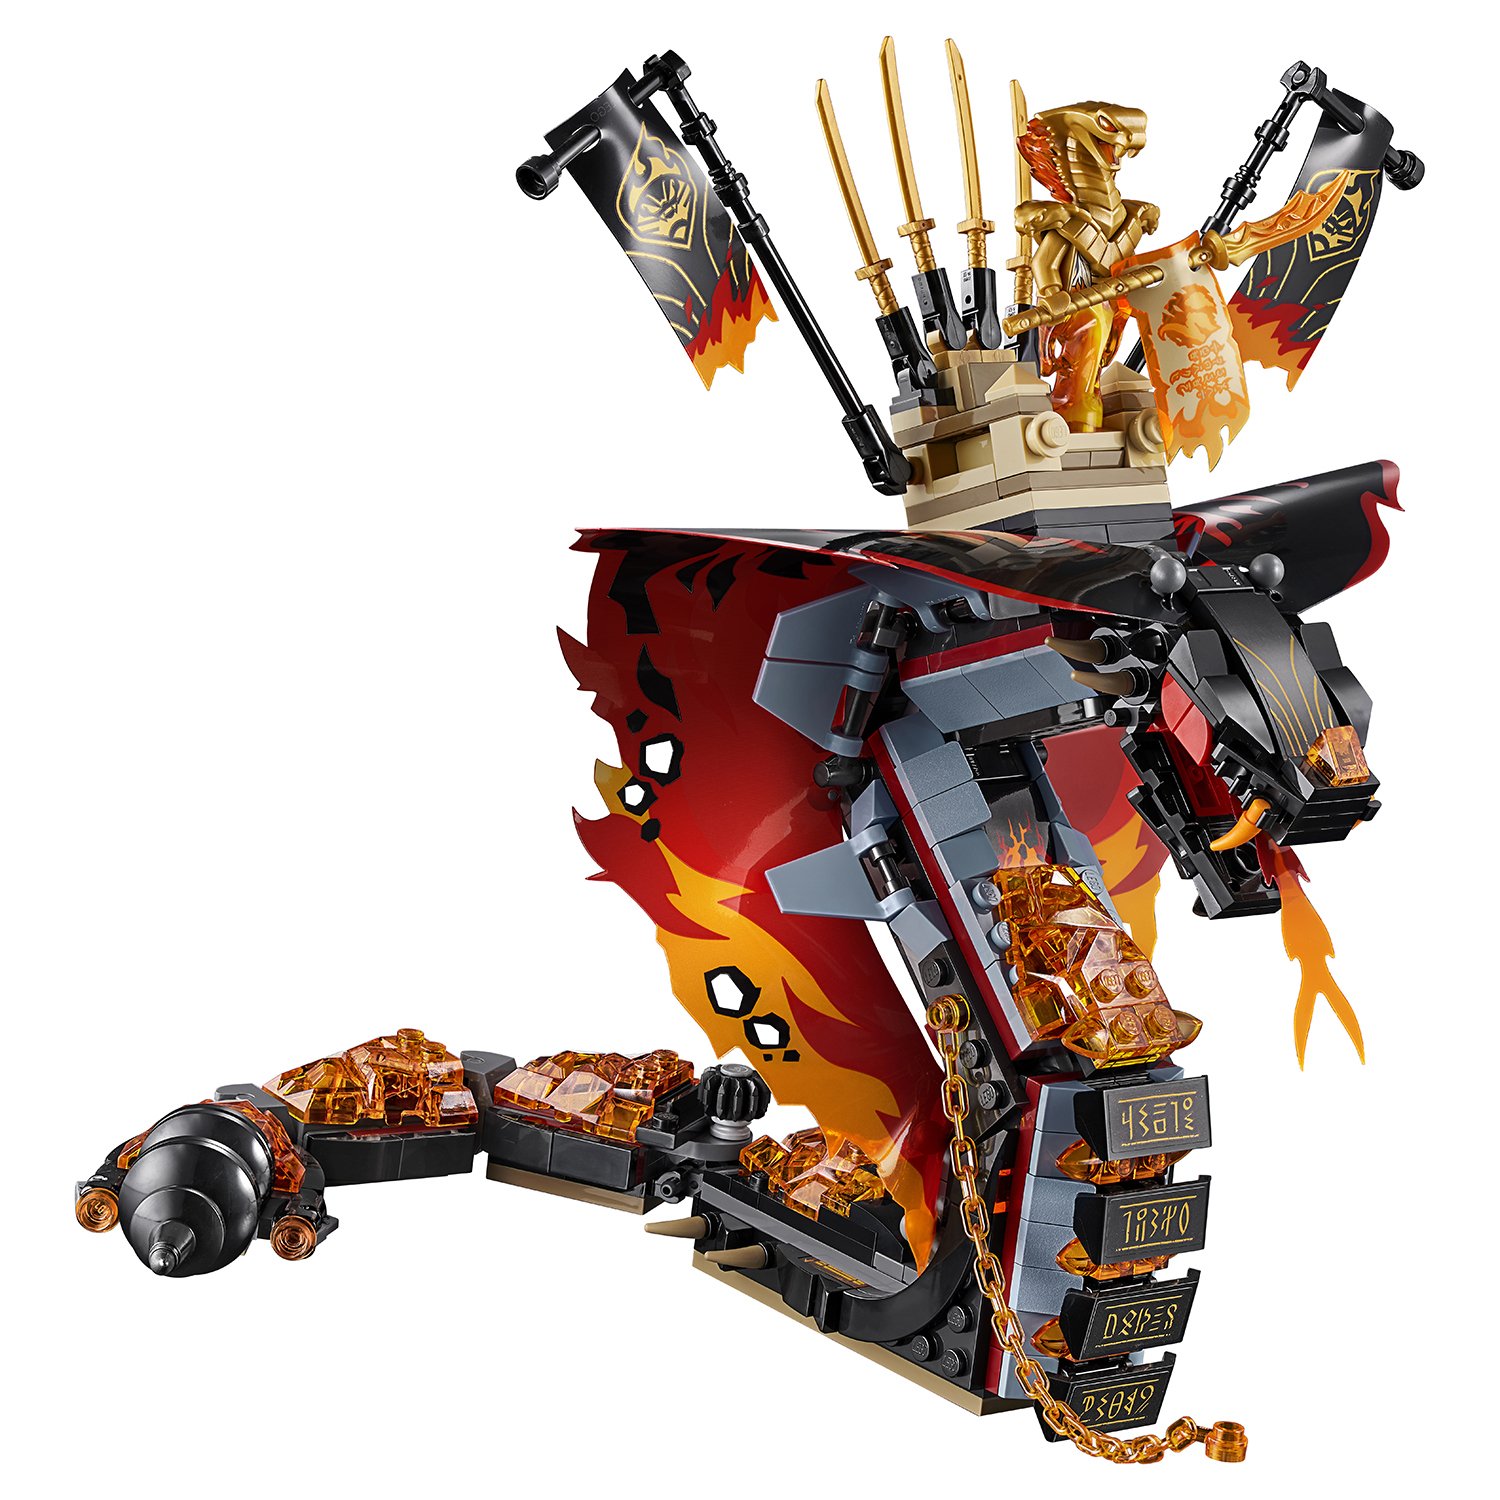 Lego Ninjago 70674 Огненный кинжал